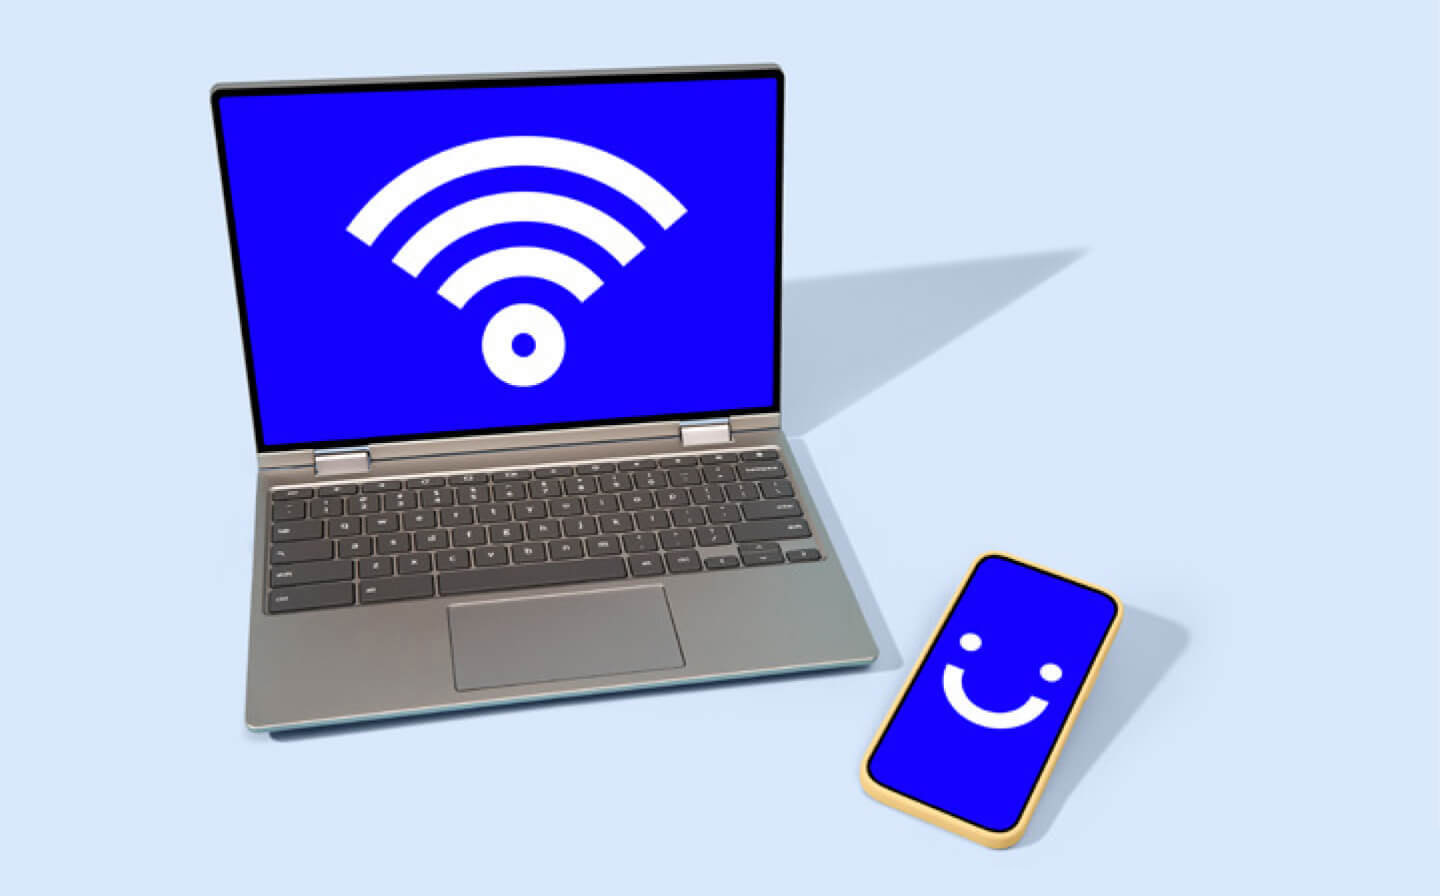 laptop displaying blue wifi symbol next to visible phone